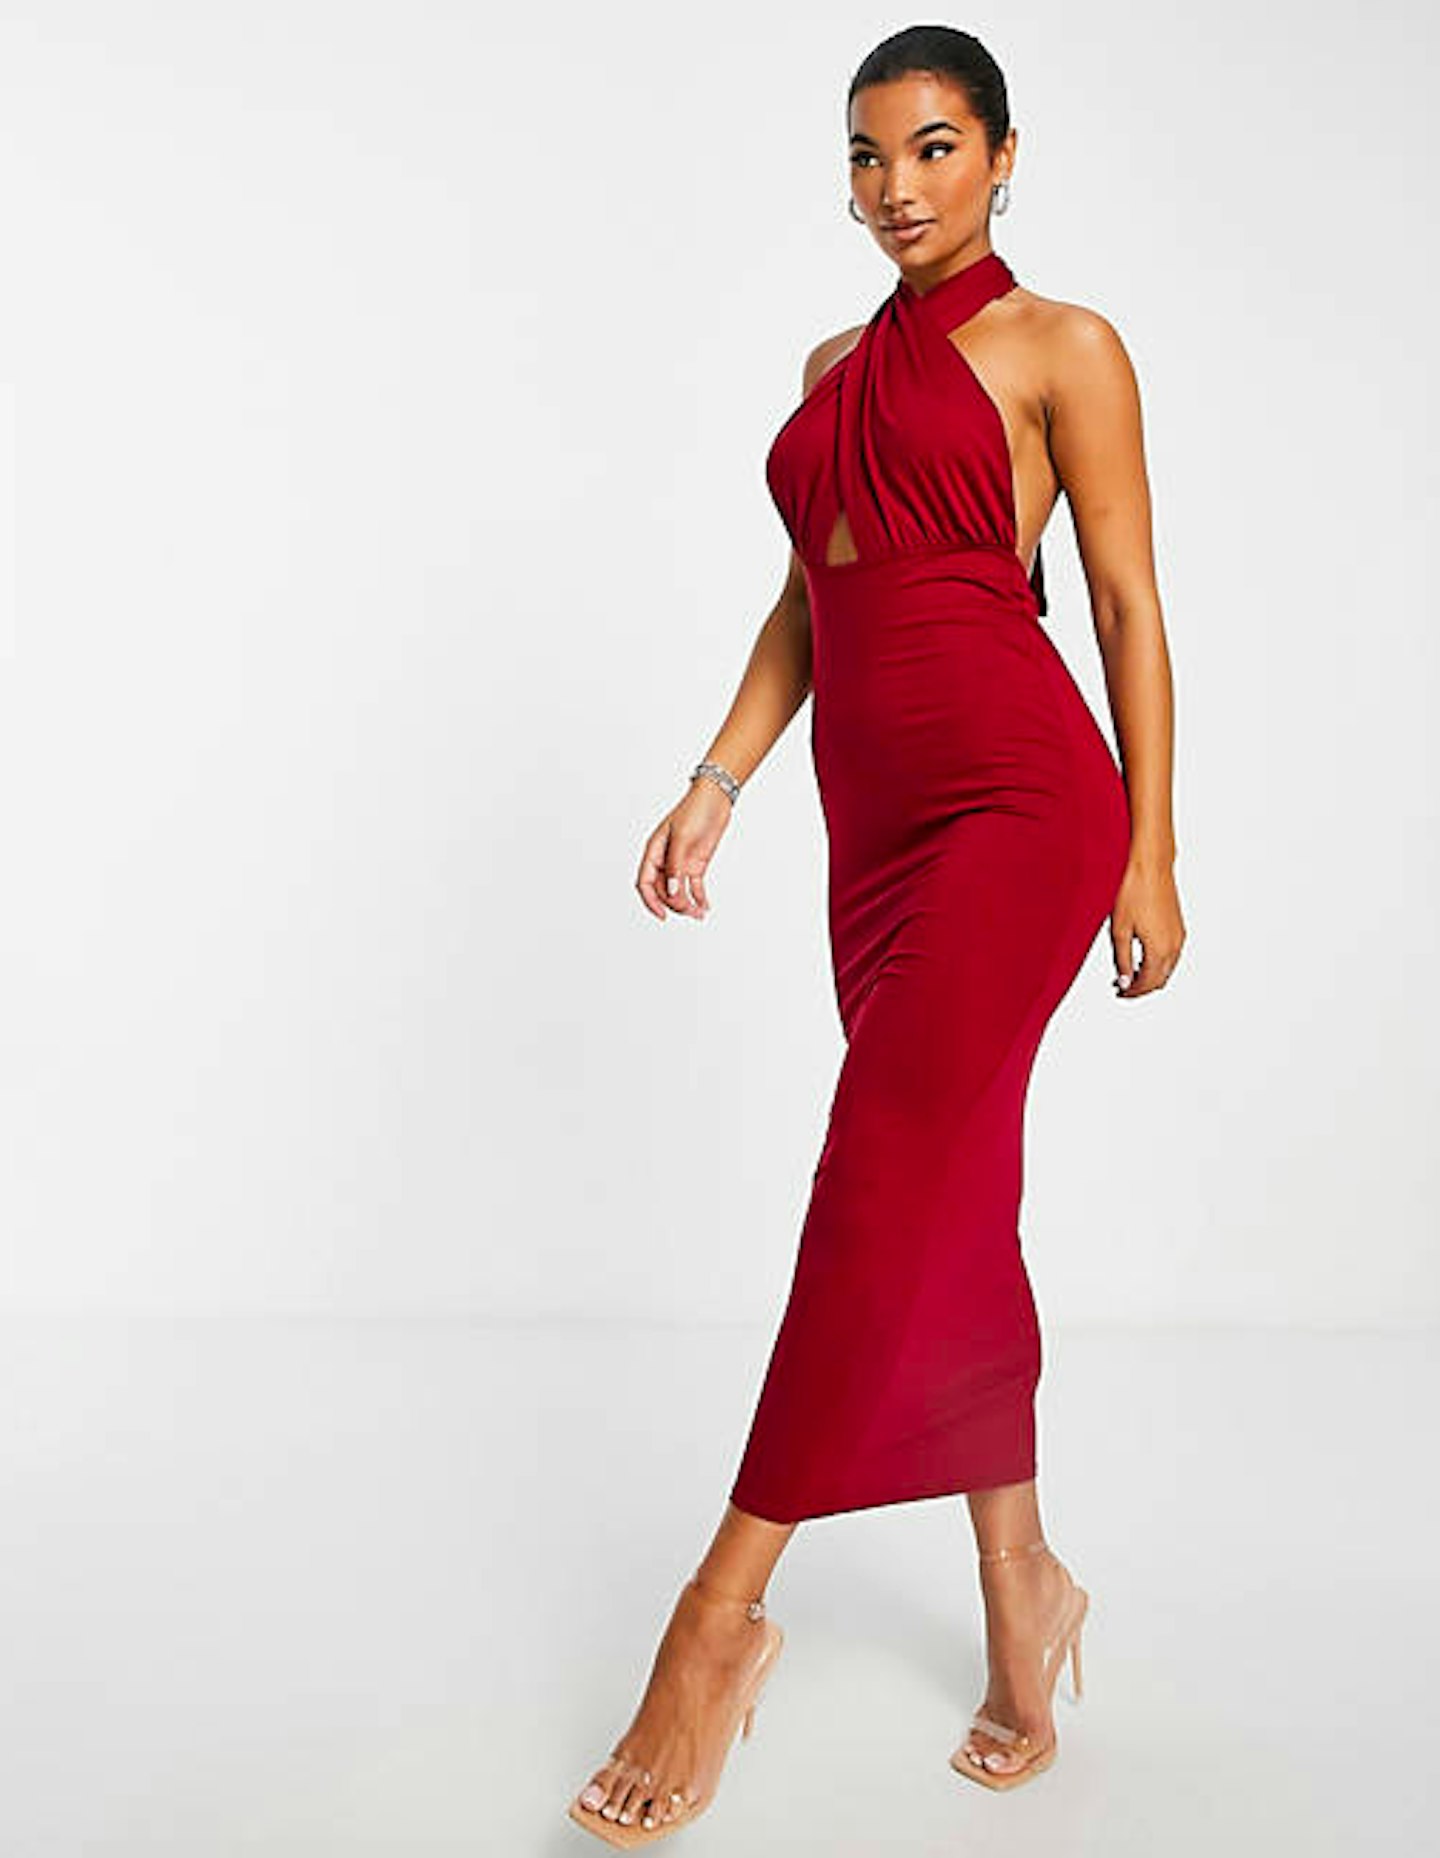 Red Maxi Dress, £18